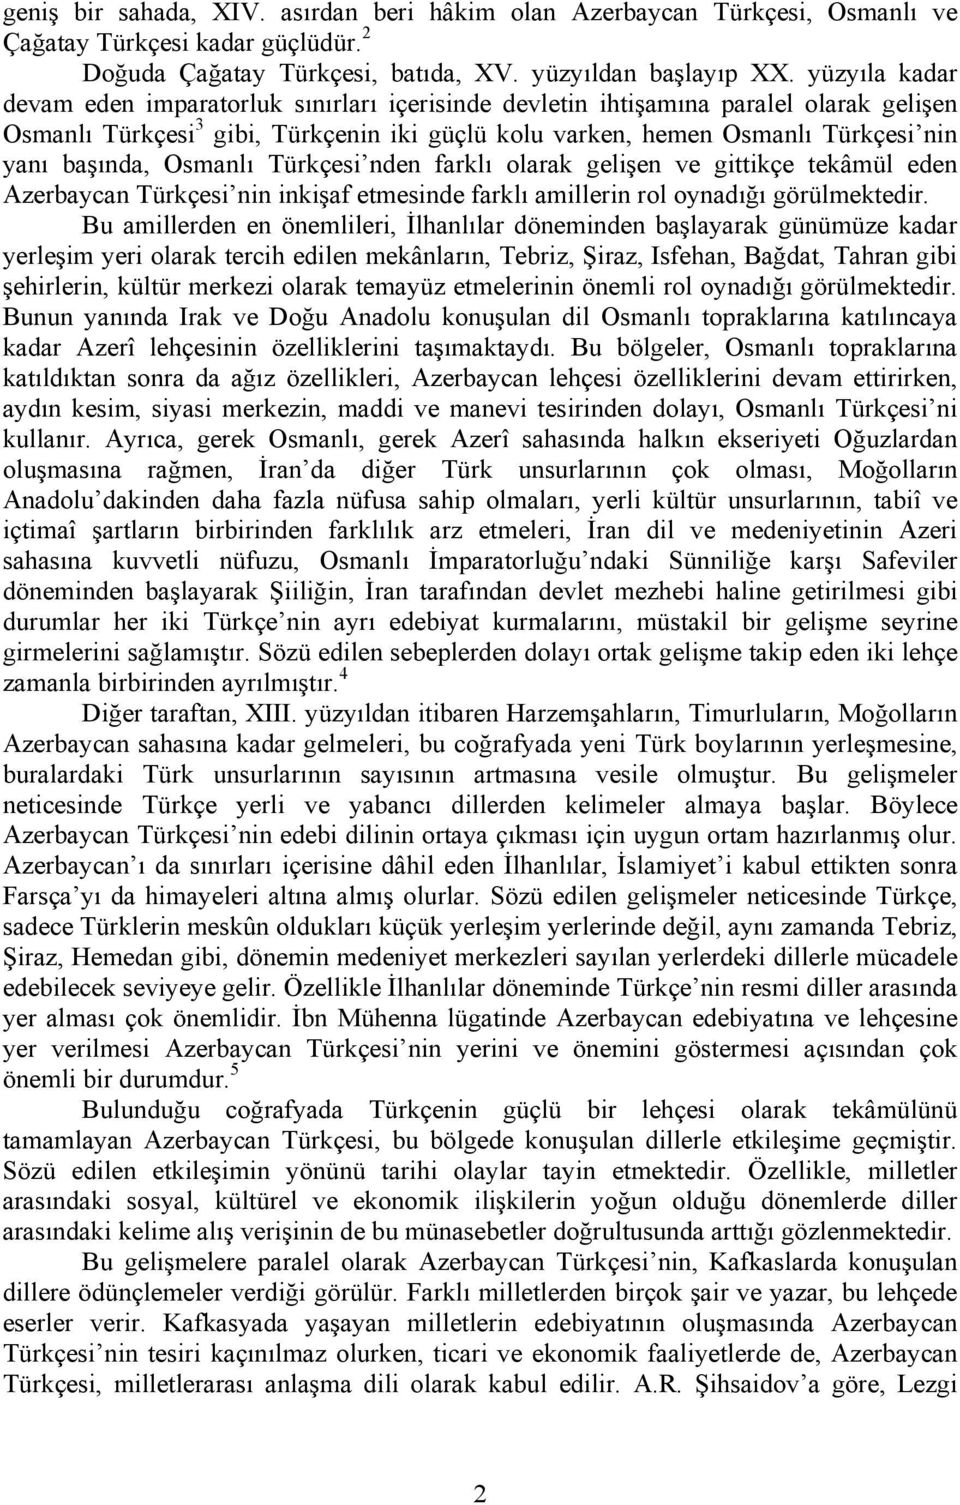 başında, Osmanlı Türkçesi nden farklı olarak gelişen ve gittikçe tekâmül eden Azerbaycan Türkçesi nin inkişaf etmesinde farklı amillerin rol oynadığı görülmektedir.